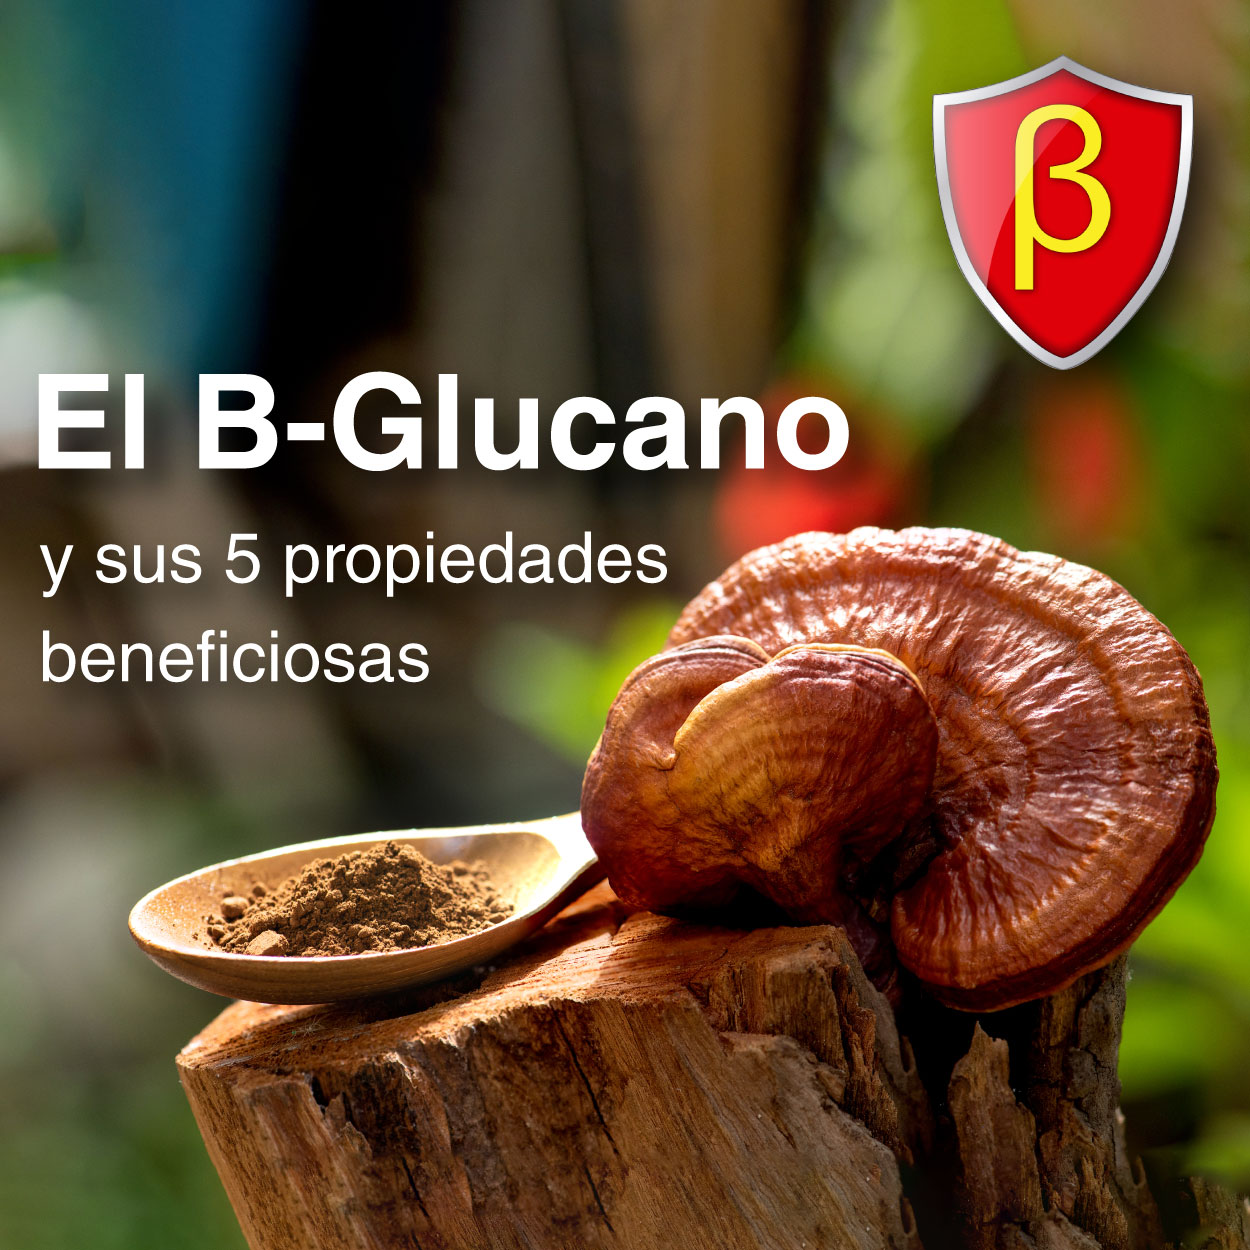 El B-Glucano y sus 5 propiedades beneficiosas